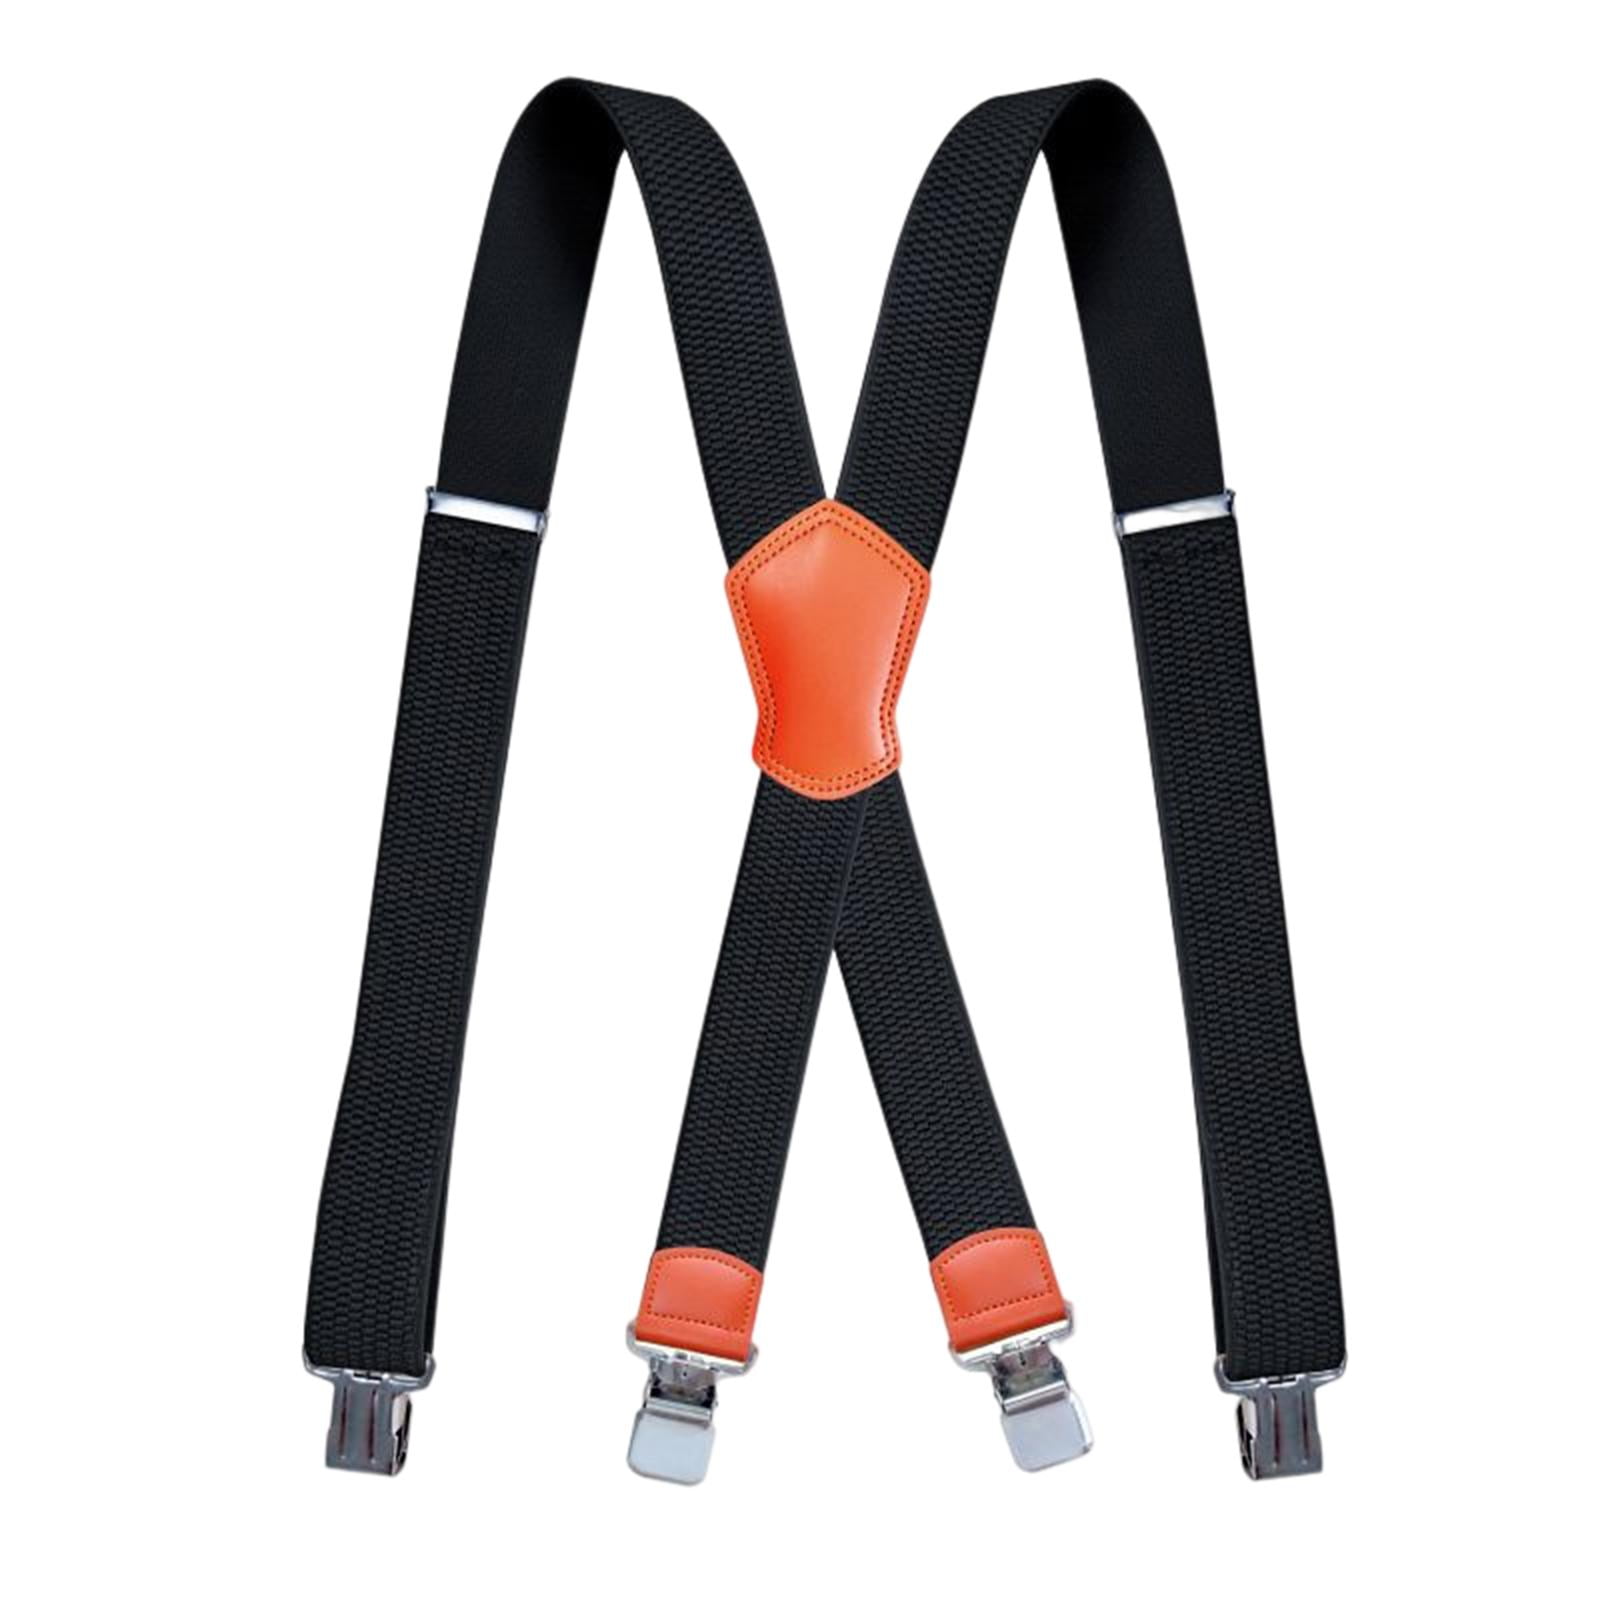 Doloise Mens Suspenders with 3 Swivel Hooks Belt Loops 1.4 Inch Wide Heavy Duty Adjustable Braces 